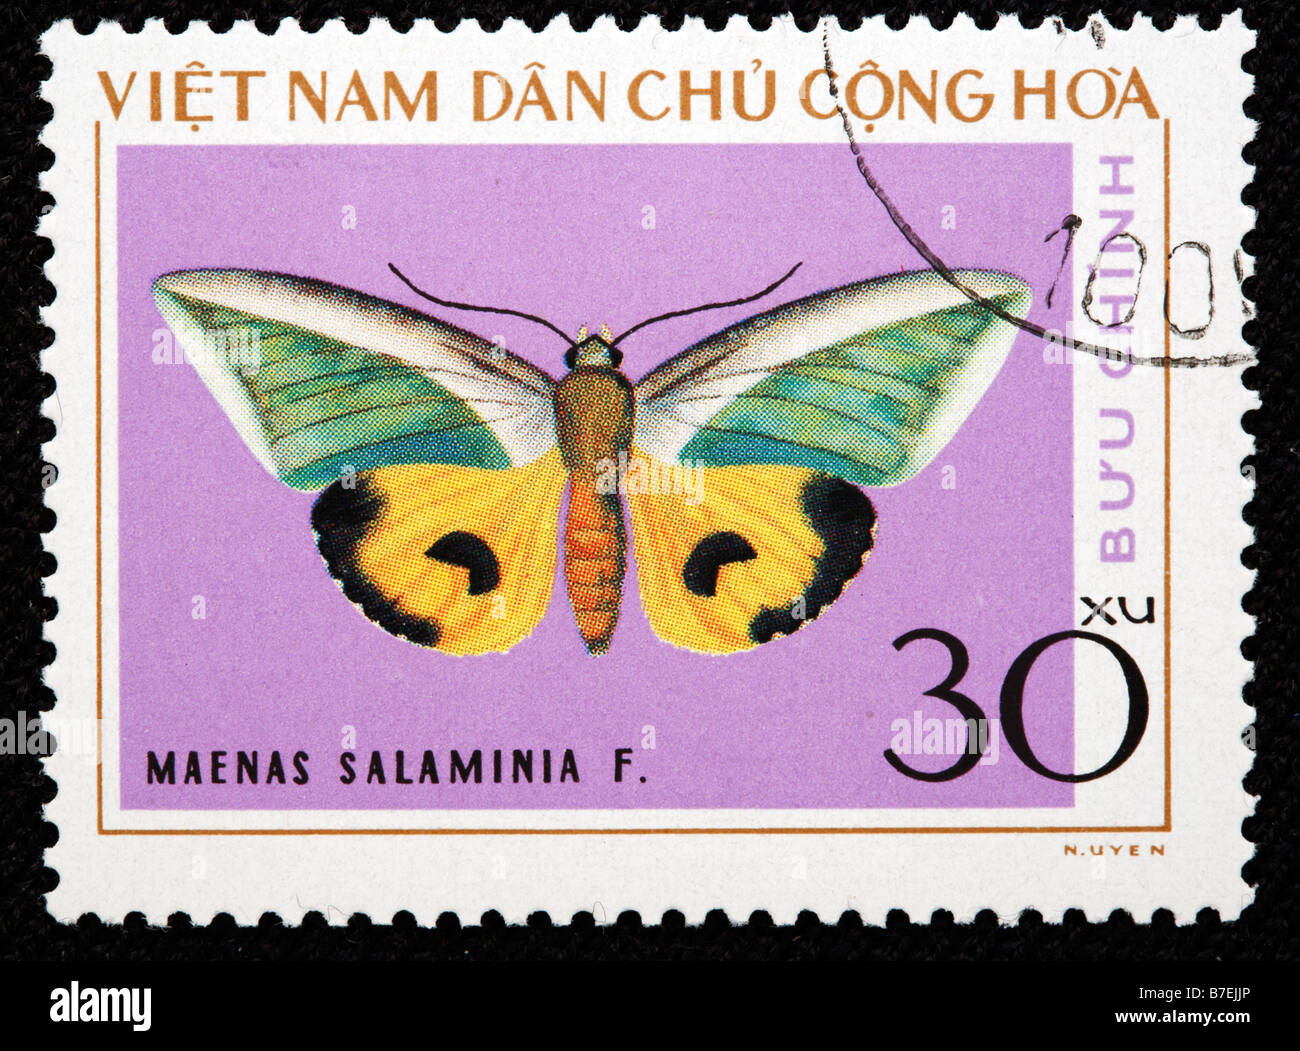 Maenas salaminia, papillon, timbre-poste, Vietnam, 1976 Banque D'Images